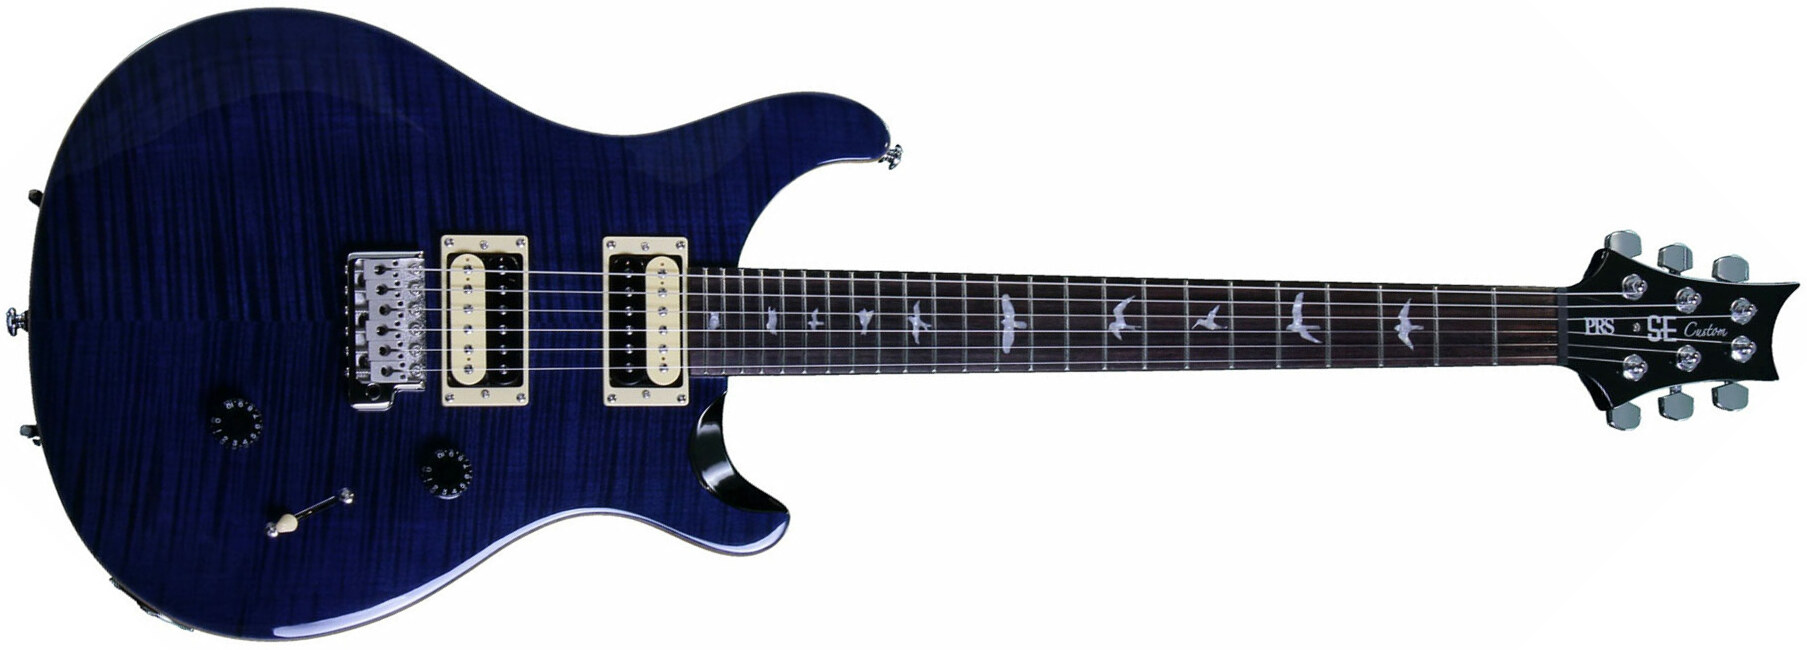 Prs Se Custom 24 2018 Hh Trem Rw - Whale Blue - Guitarra eléctrica de doble corte. - Main picture